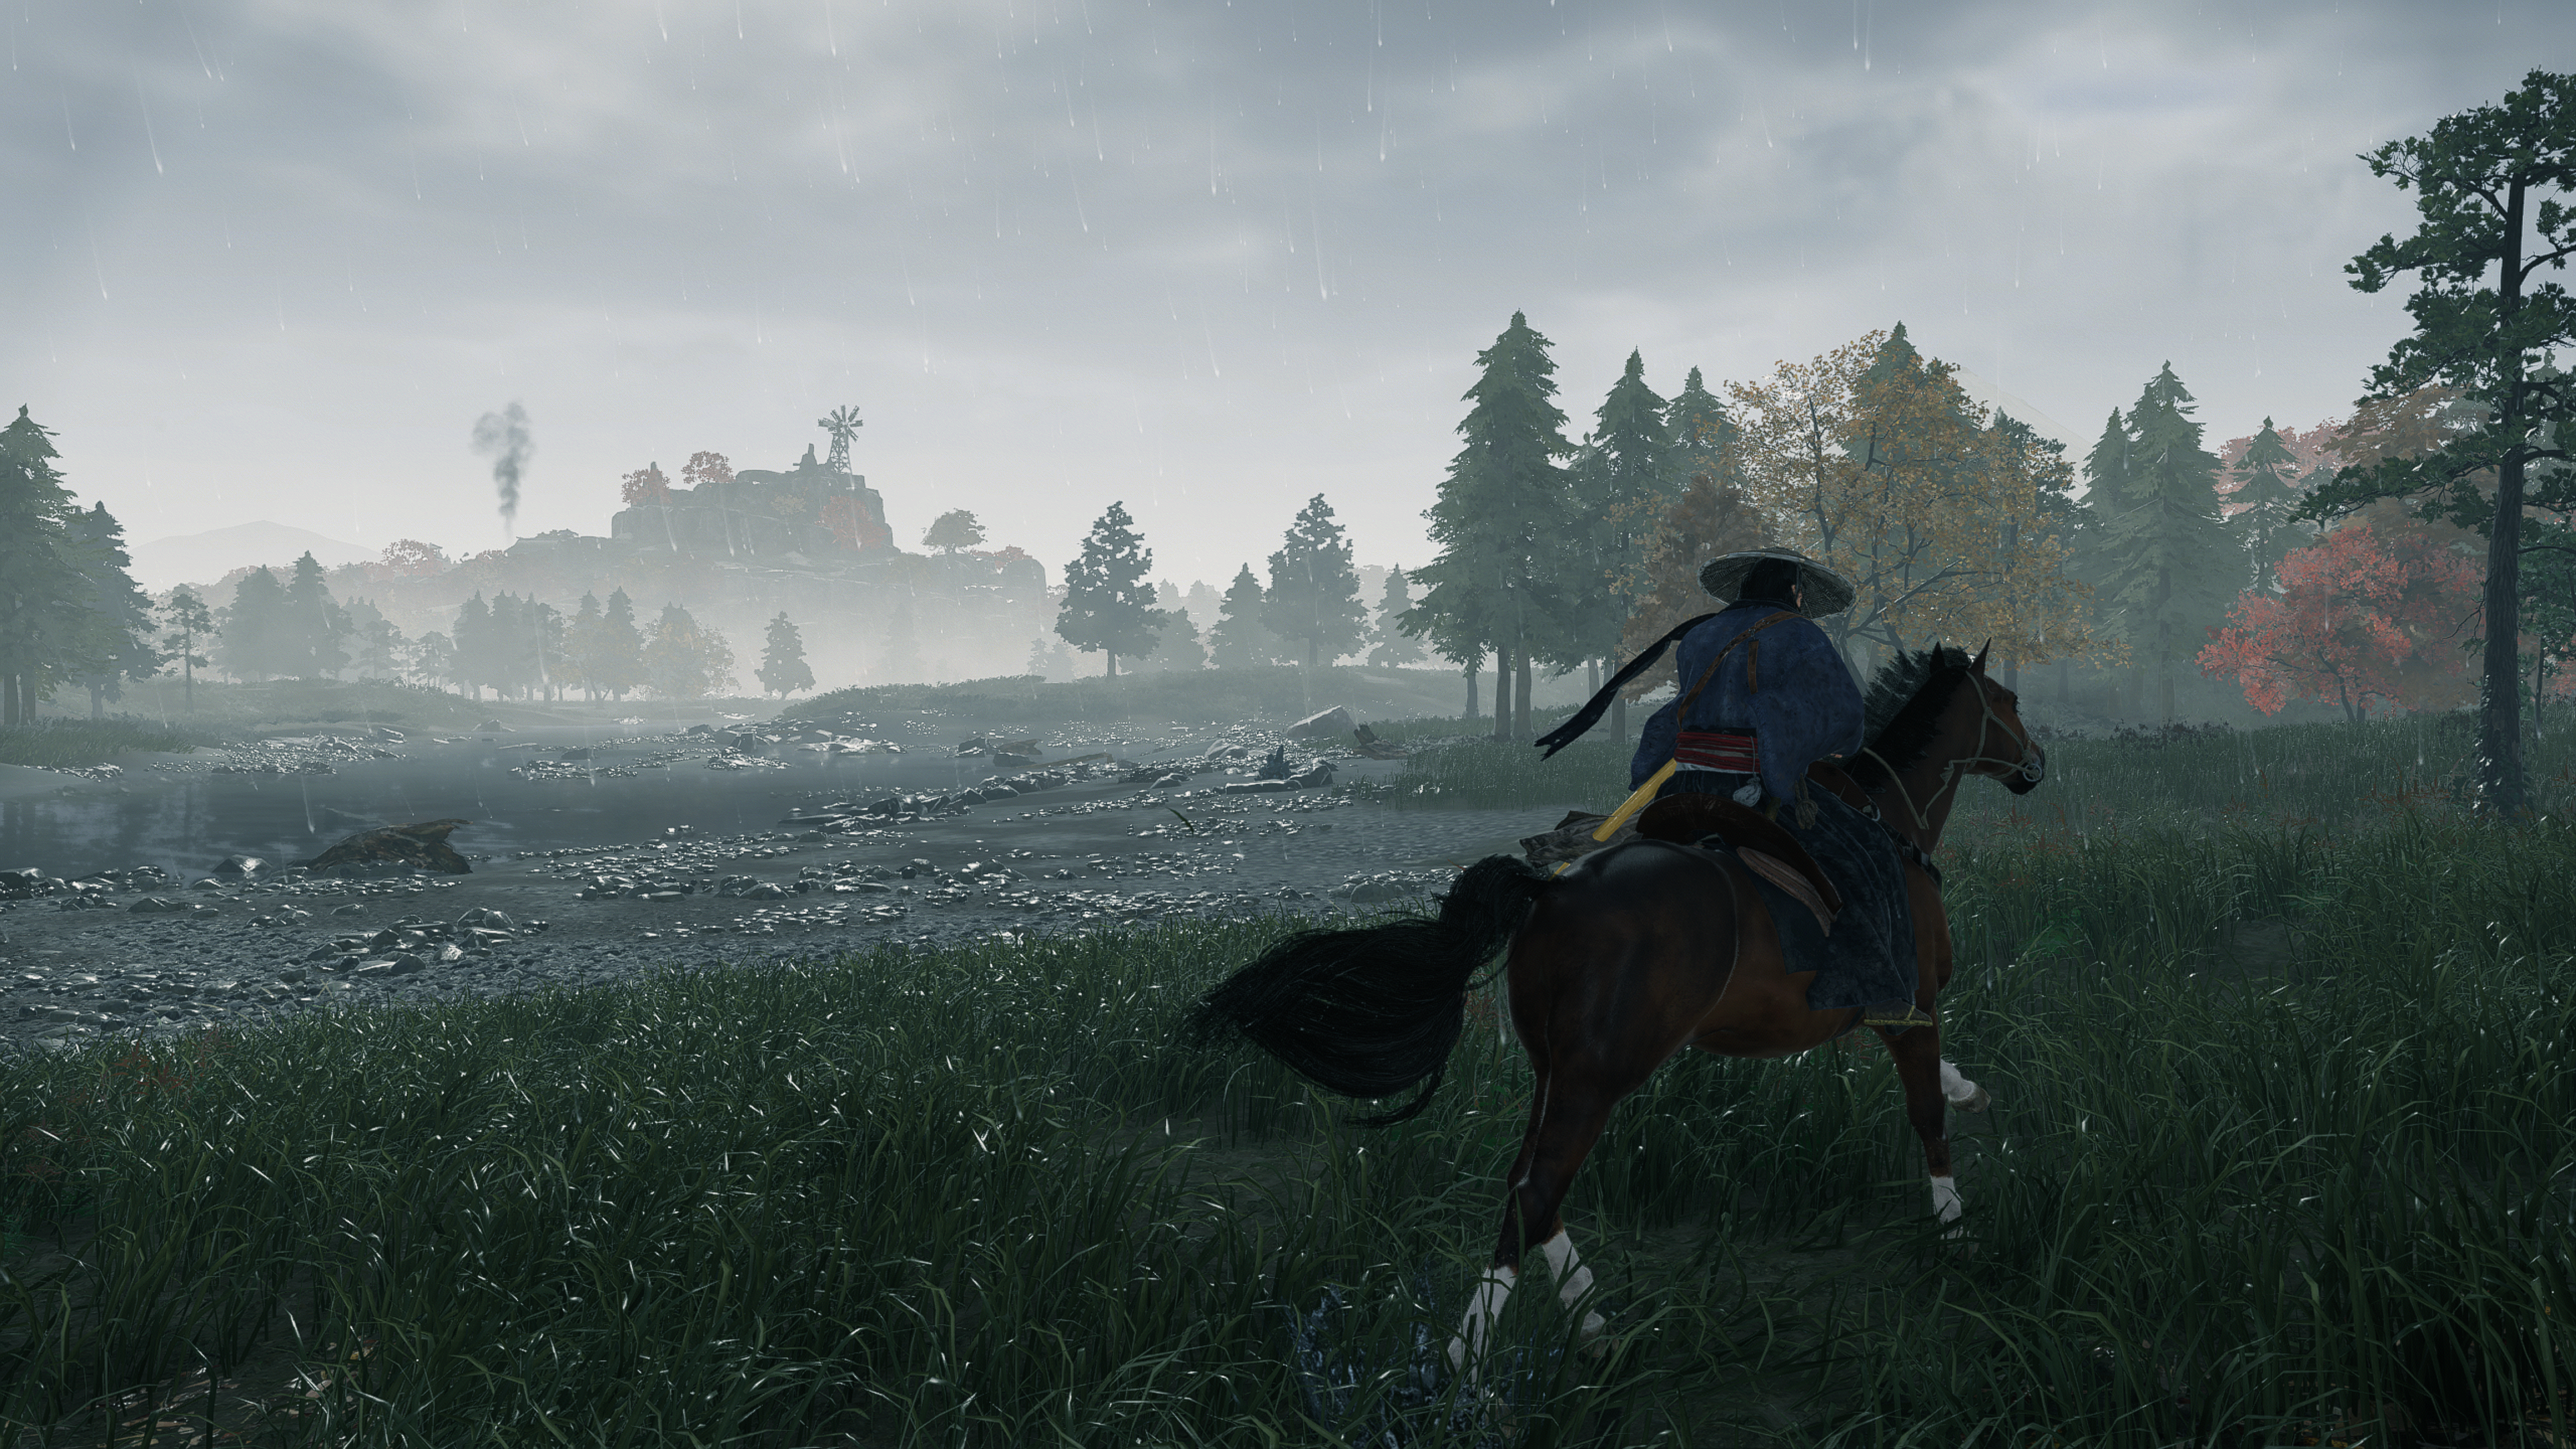 Capture d'écran officielle de Rise of the Ronin montrant le joueur chevauchant un cheval vers la droite dans une campagne japonaise balayée